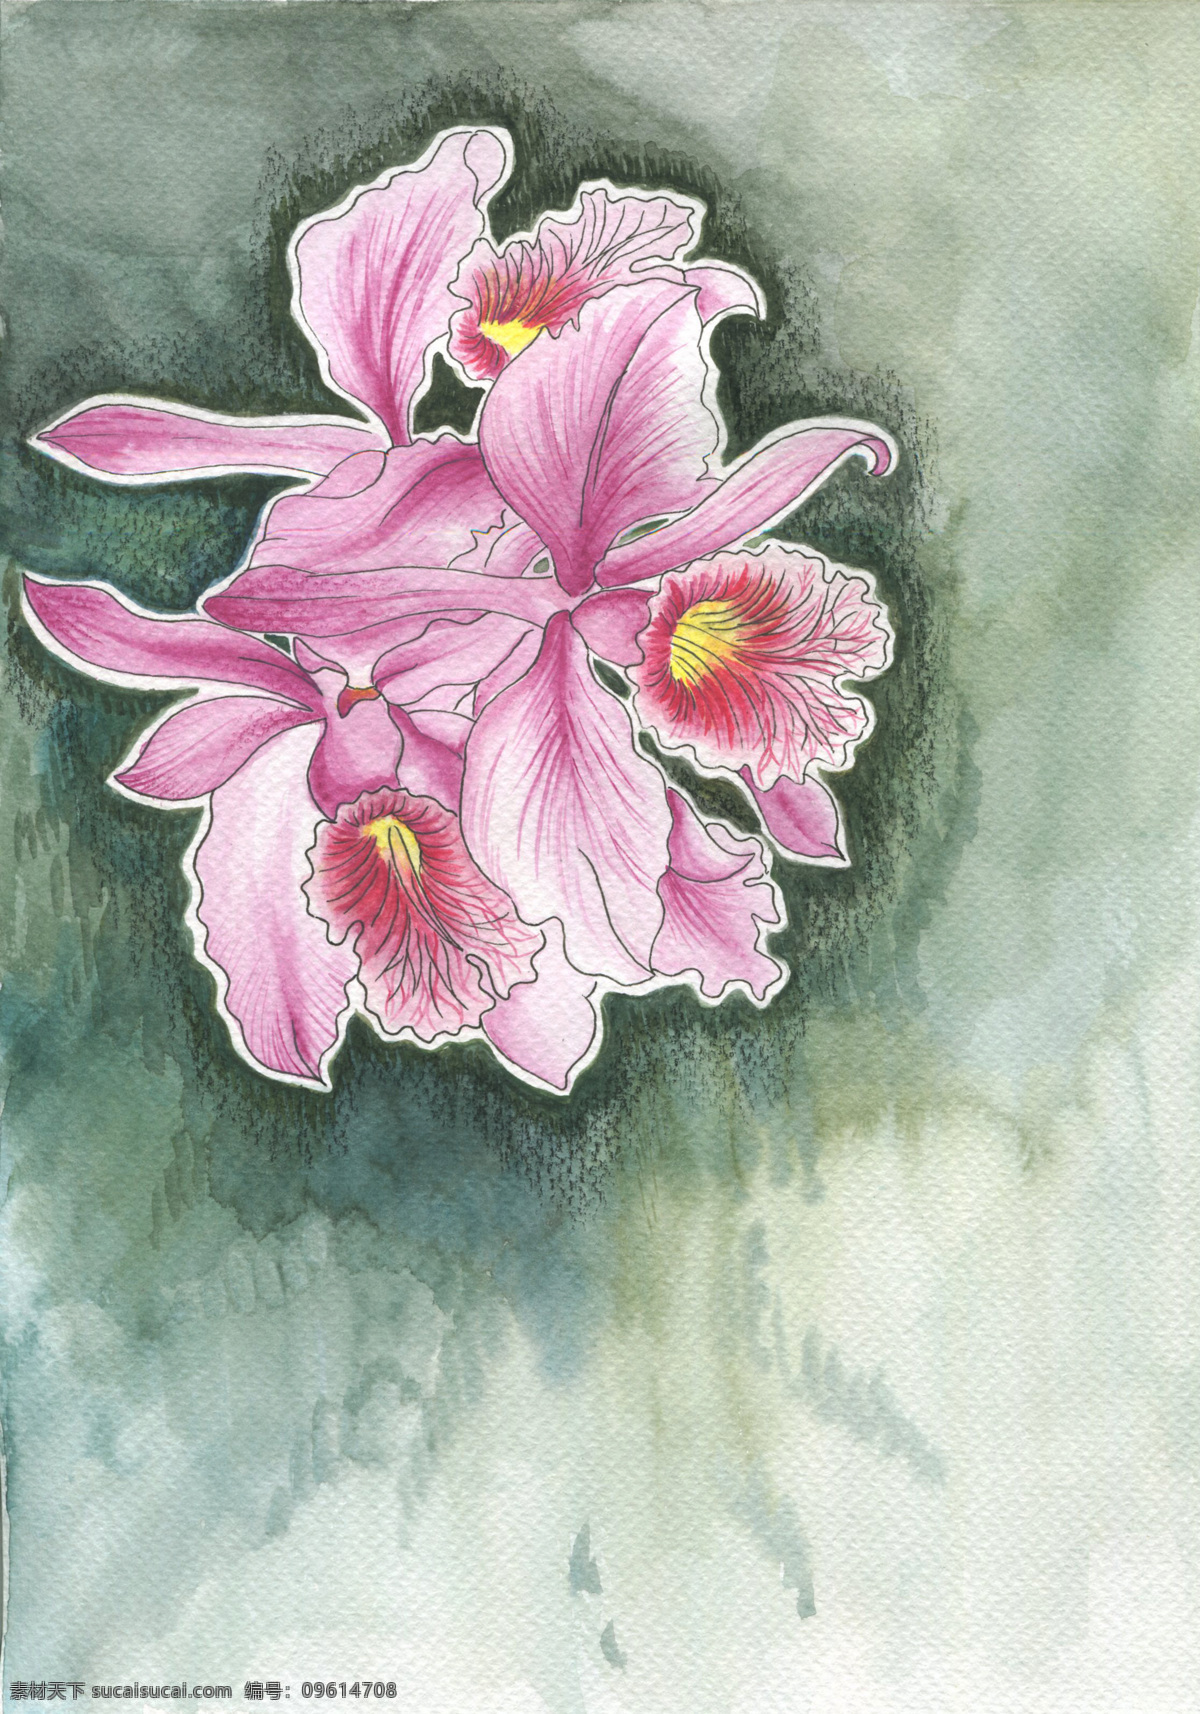 中國蘭花 蘭花 粉色 插畫 水彩蘭花 手繪蘭花 灰色